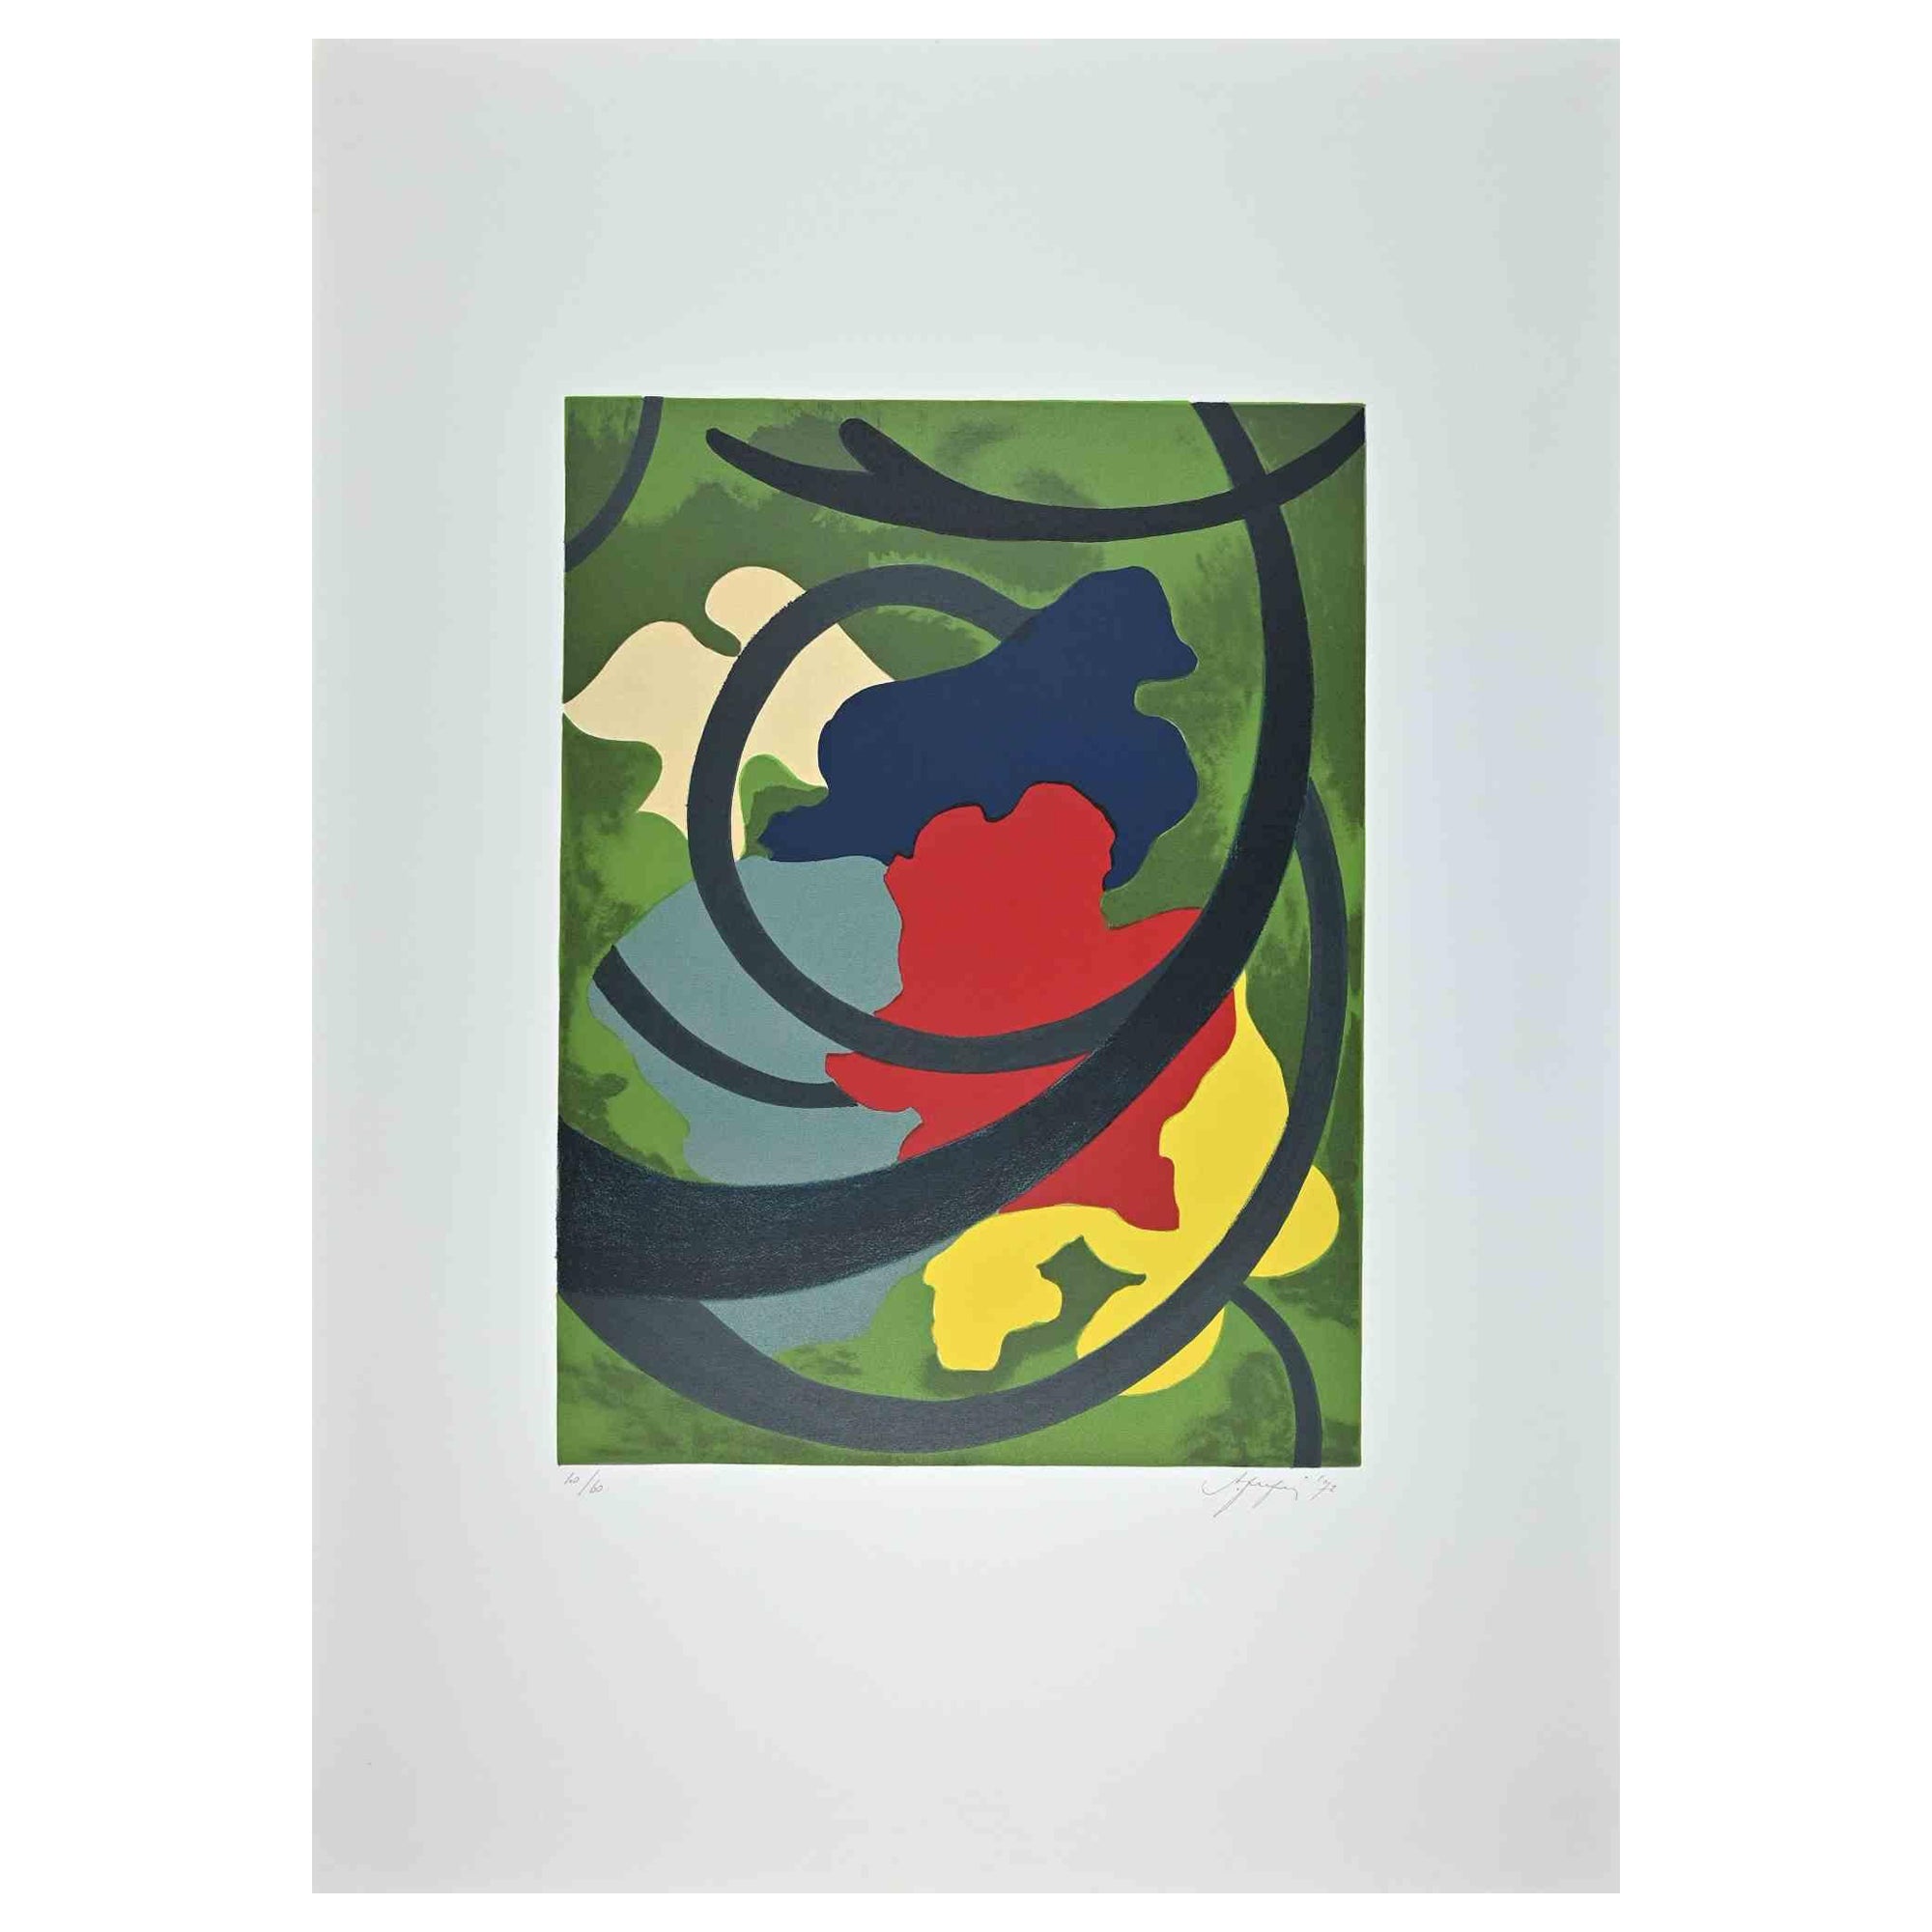 Abstract Print Amintore Fanfani - Composition abstraite - Impression sérigraphiée originale de A. Fanfani - 1972